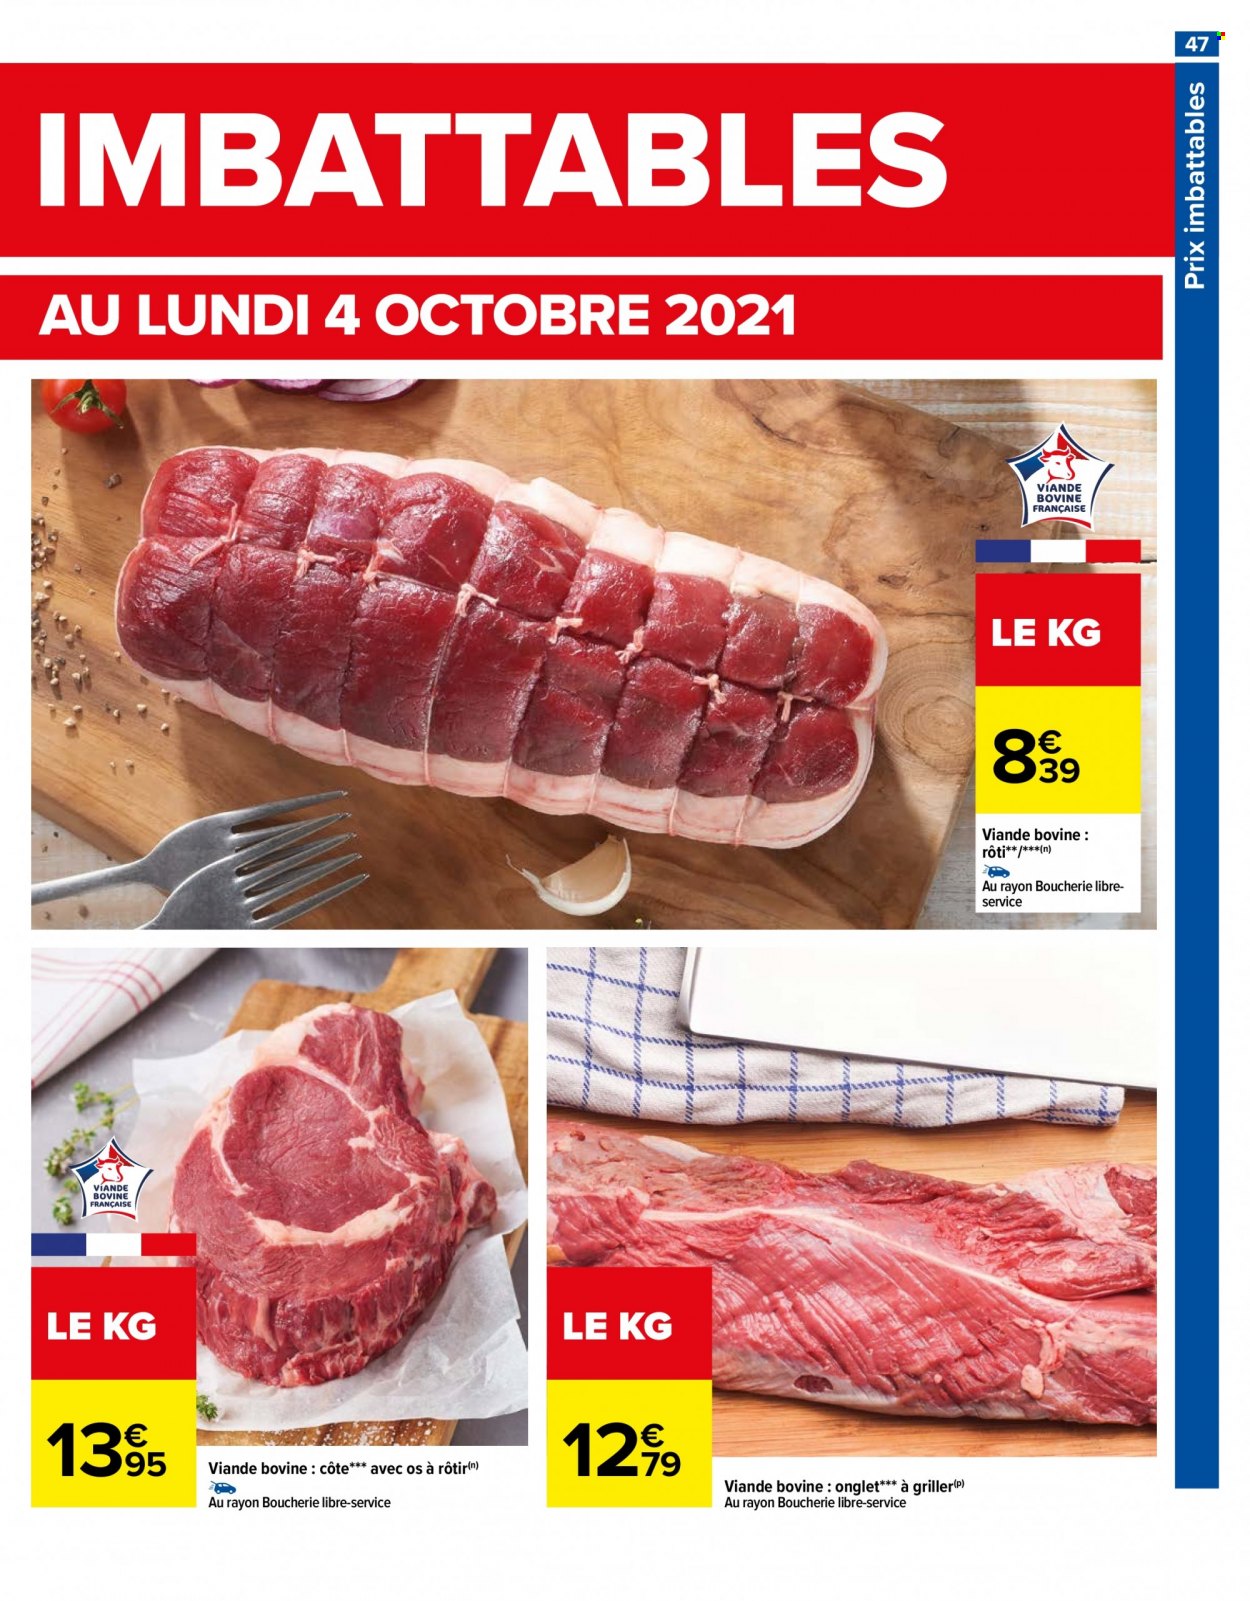 Catalogue Carrefour Hypermarchés - 28.09.2021 - 04.10.2021. 